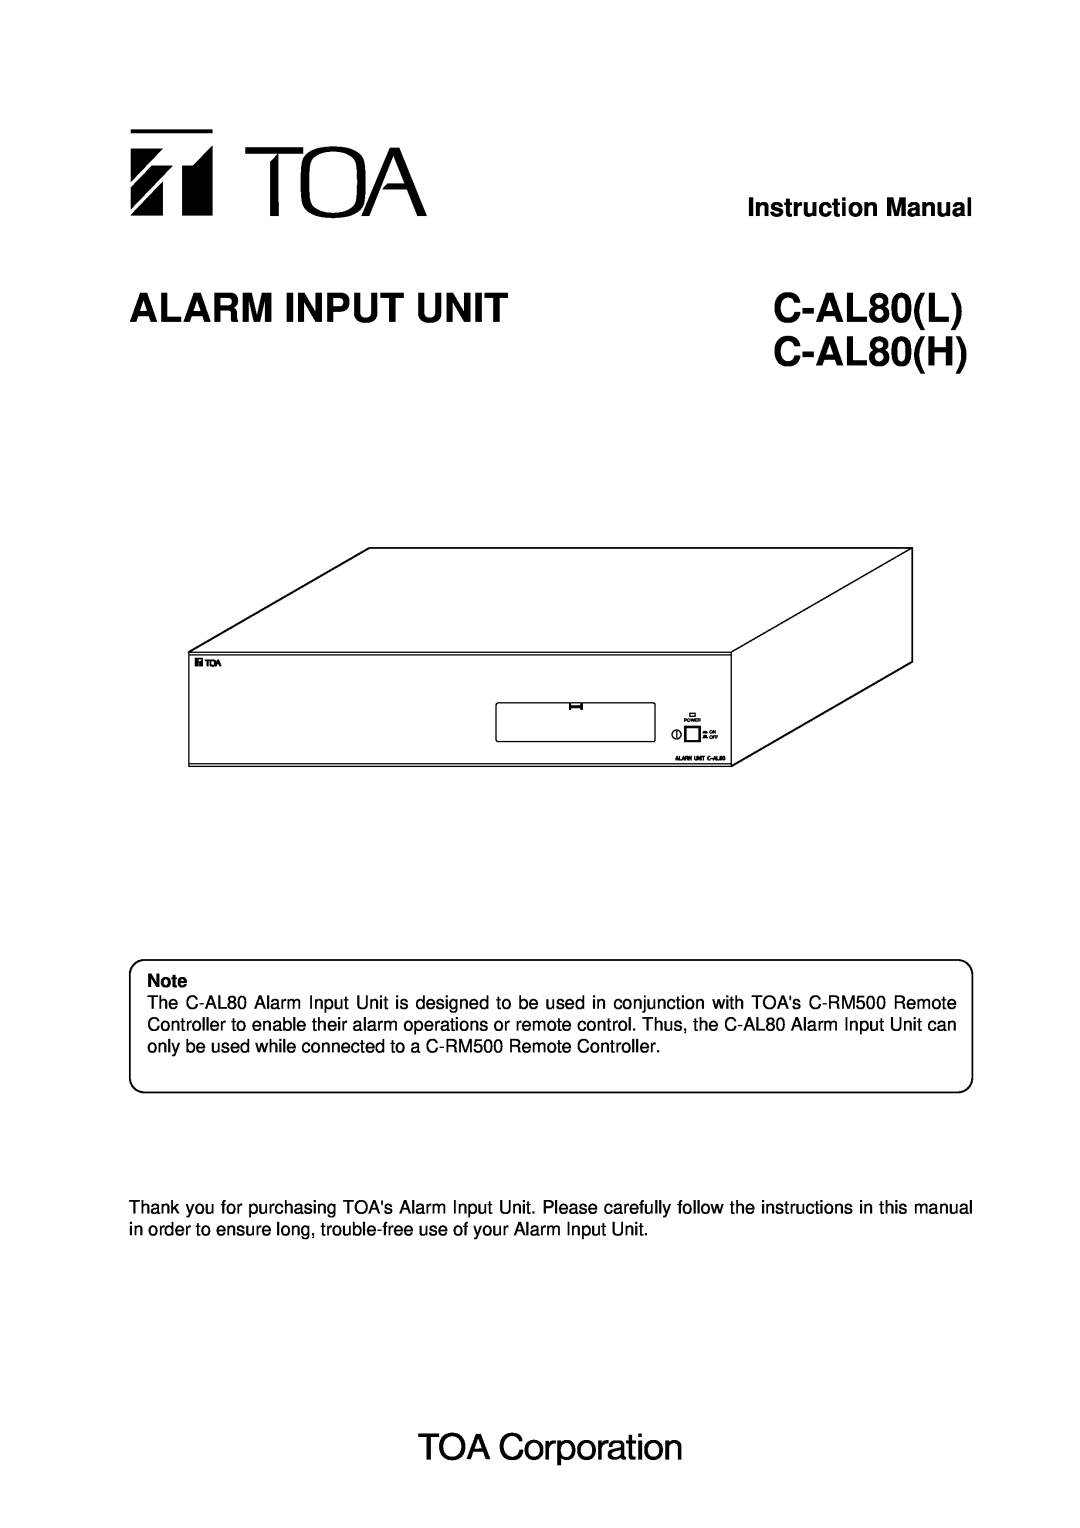 TOA Electronics C-AL80(H), C-AL80(L) instruction manual Instruction Manual, Alarm Input Unit, C-AL80L, C-AL80H 